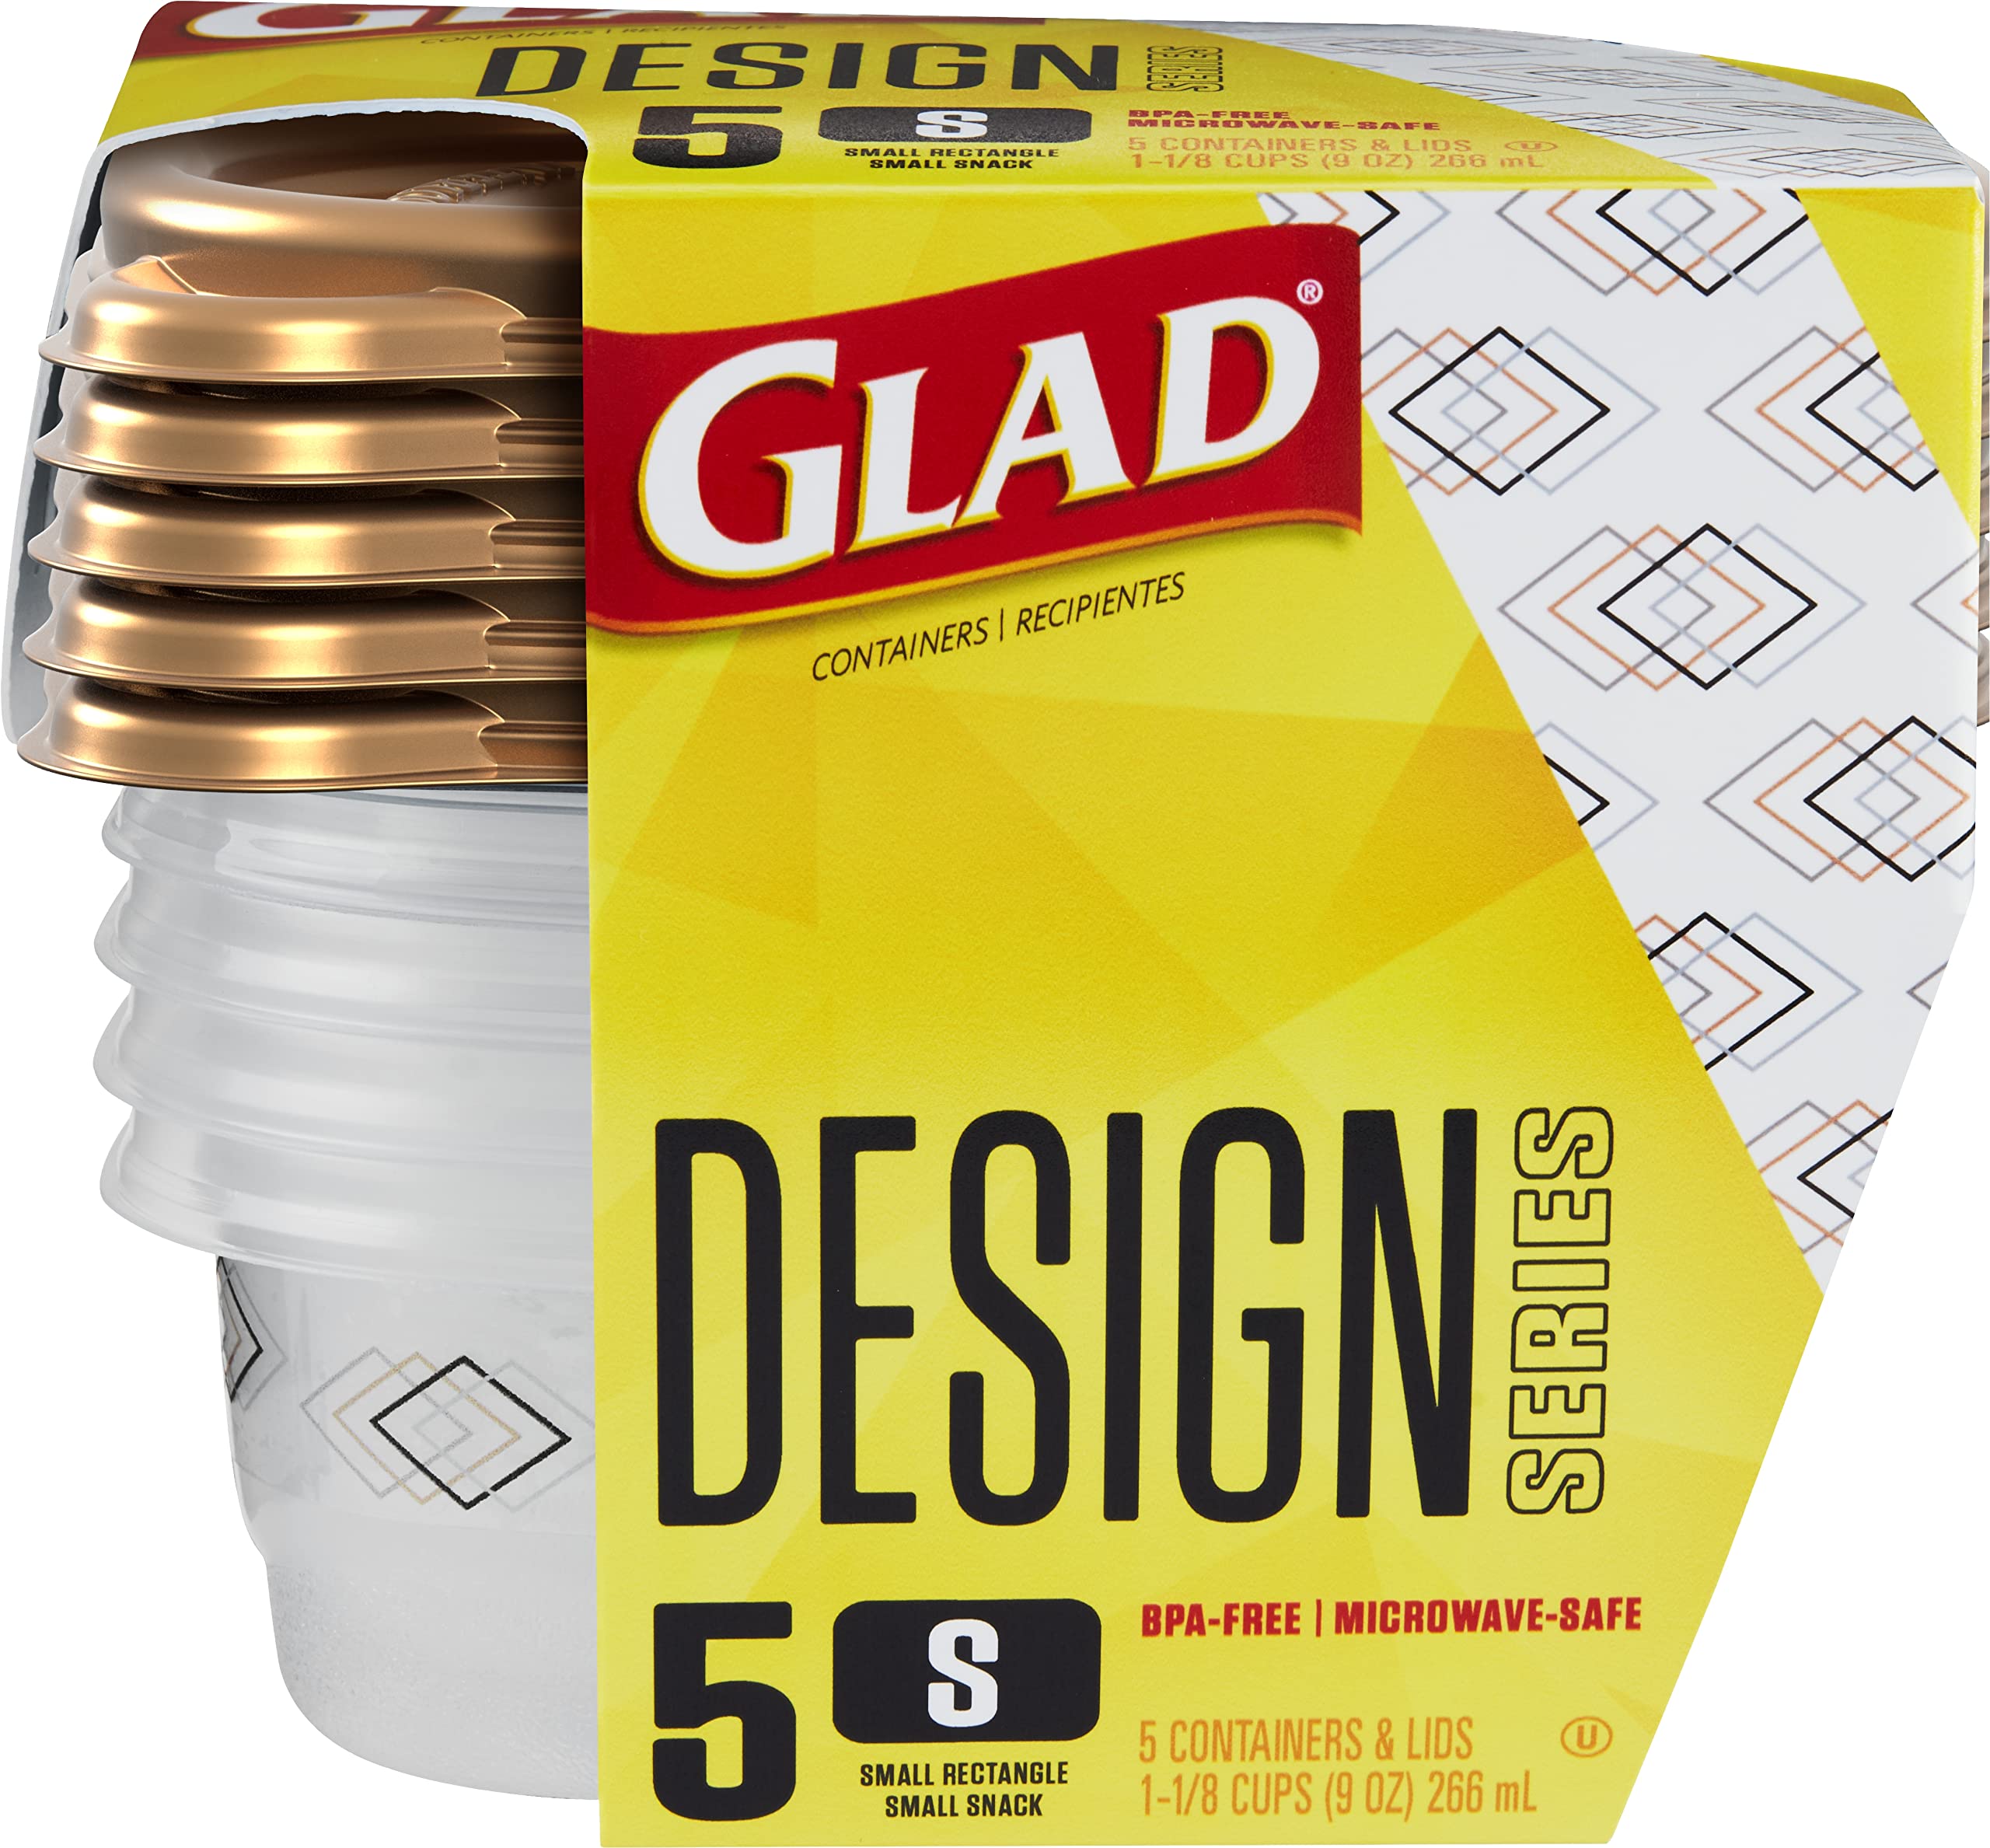 Glad Designer Series Plastic Containers and Lids Medium Rectangle